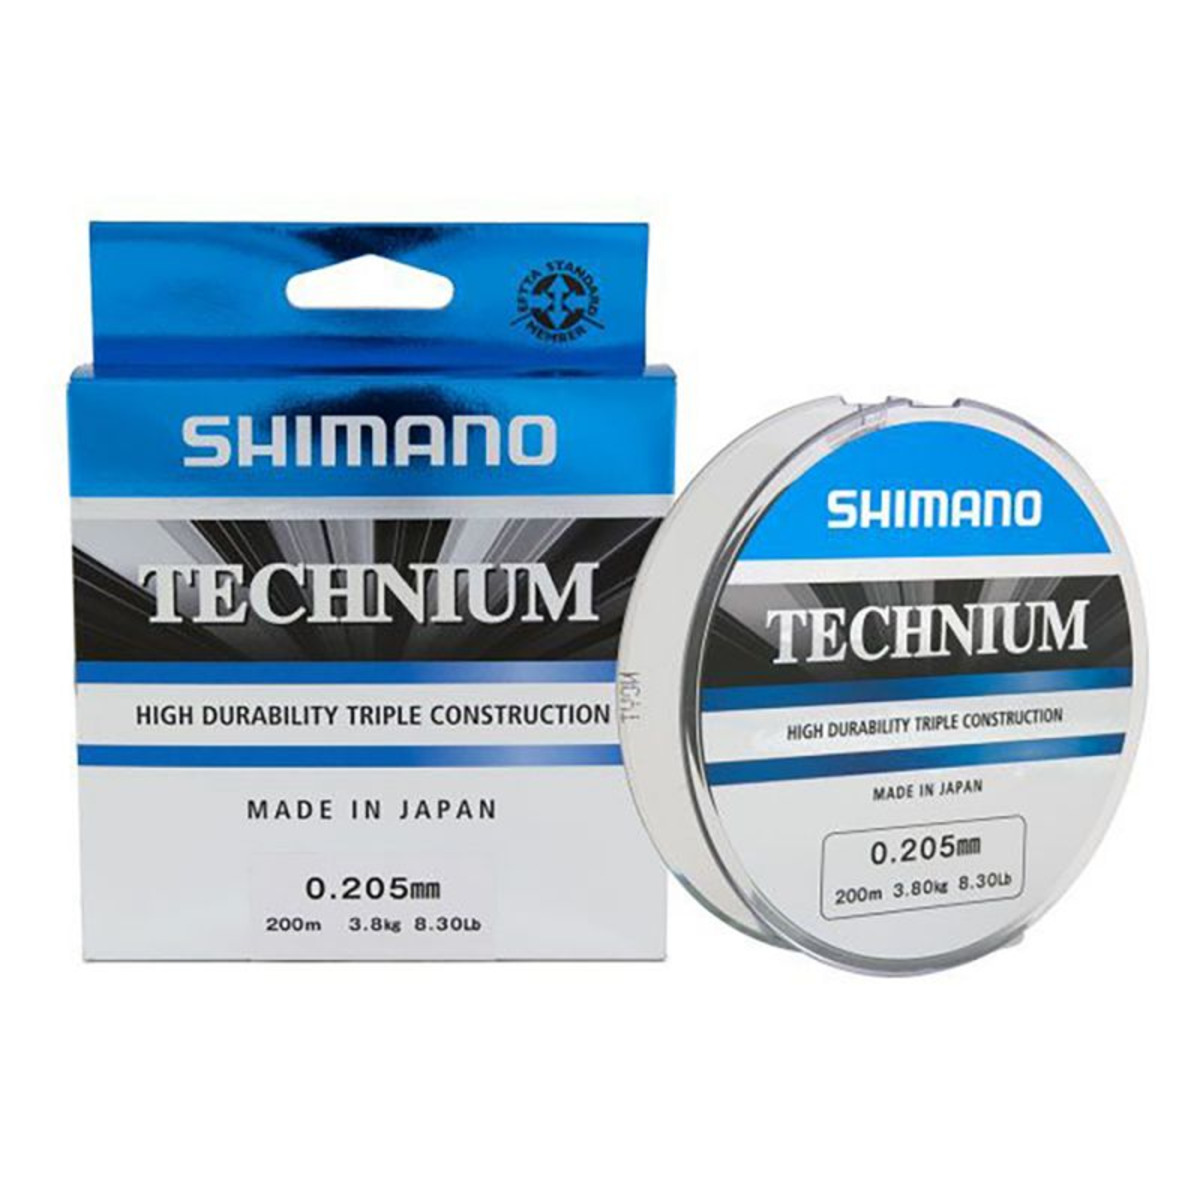 Shimano Technium 200 m - 200 m - 0.255 mm